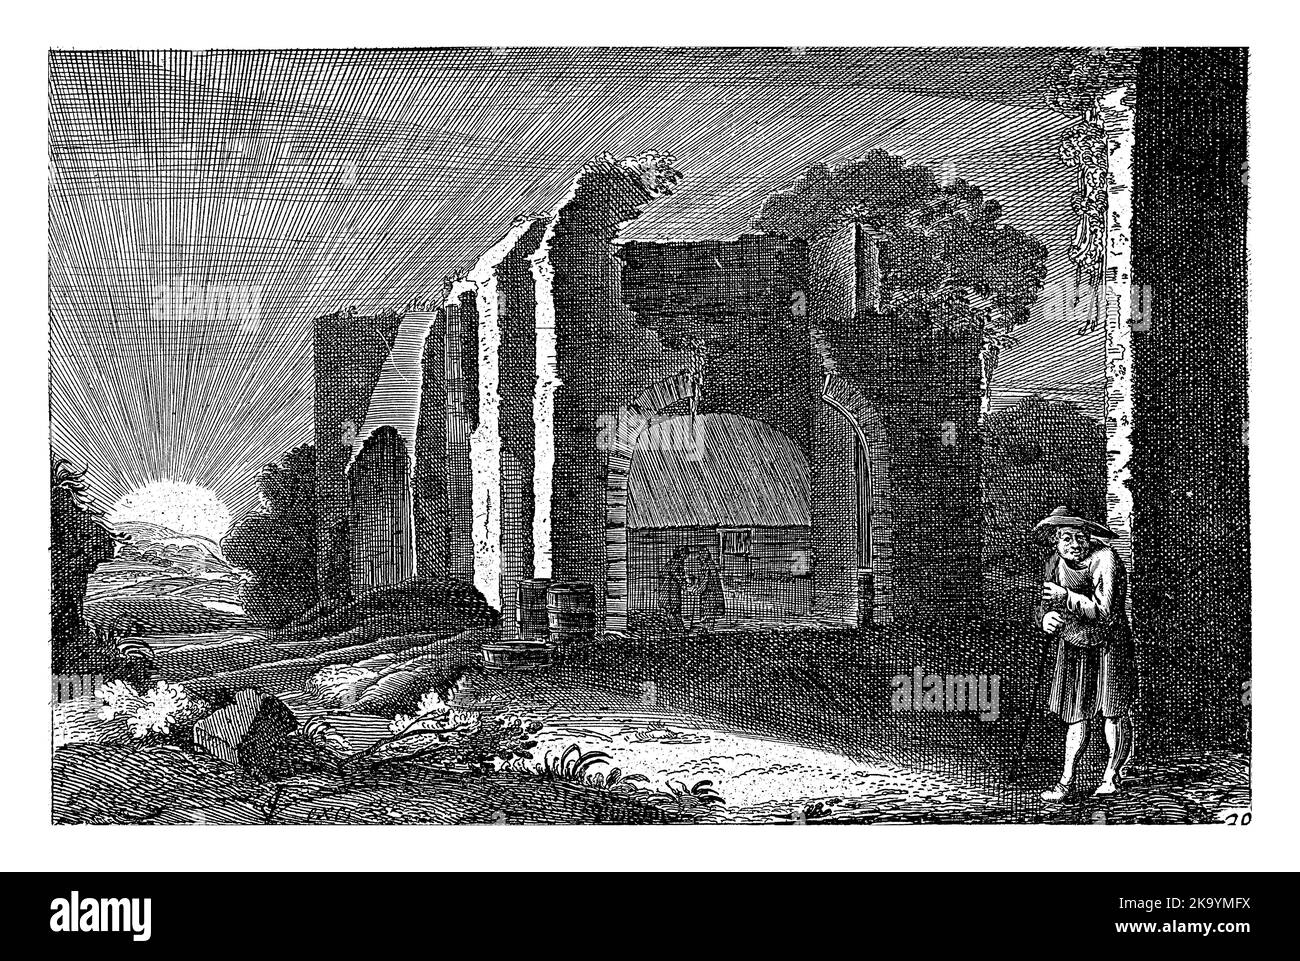 Ein Mann, der sich auf einen Stock stützt, in der Nähe einer Ruine, in der sich zwei Figuren unterhalten. Dahinter eine untergehende Sonne. Stockfoto